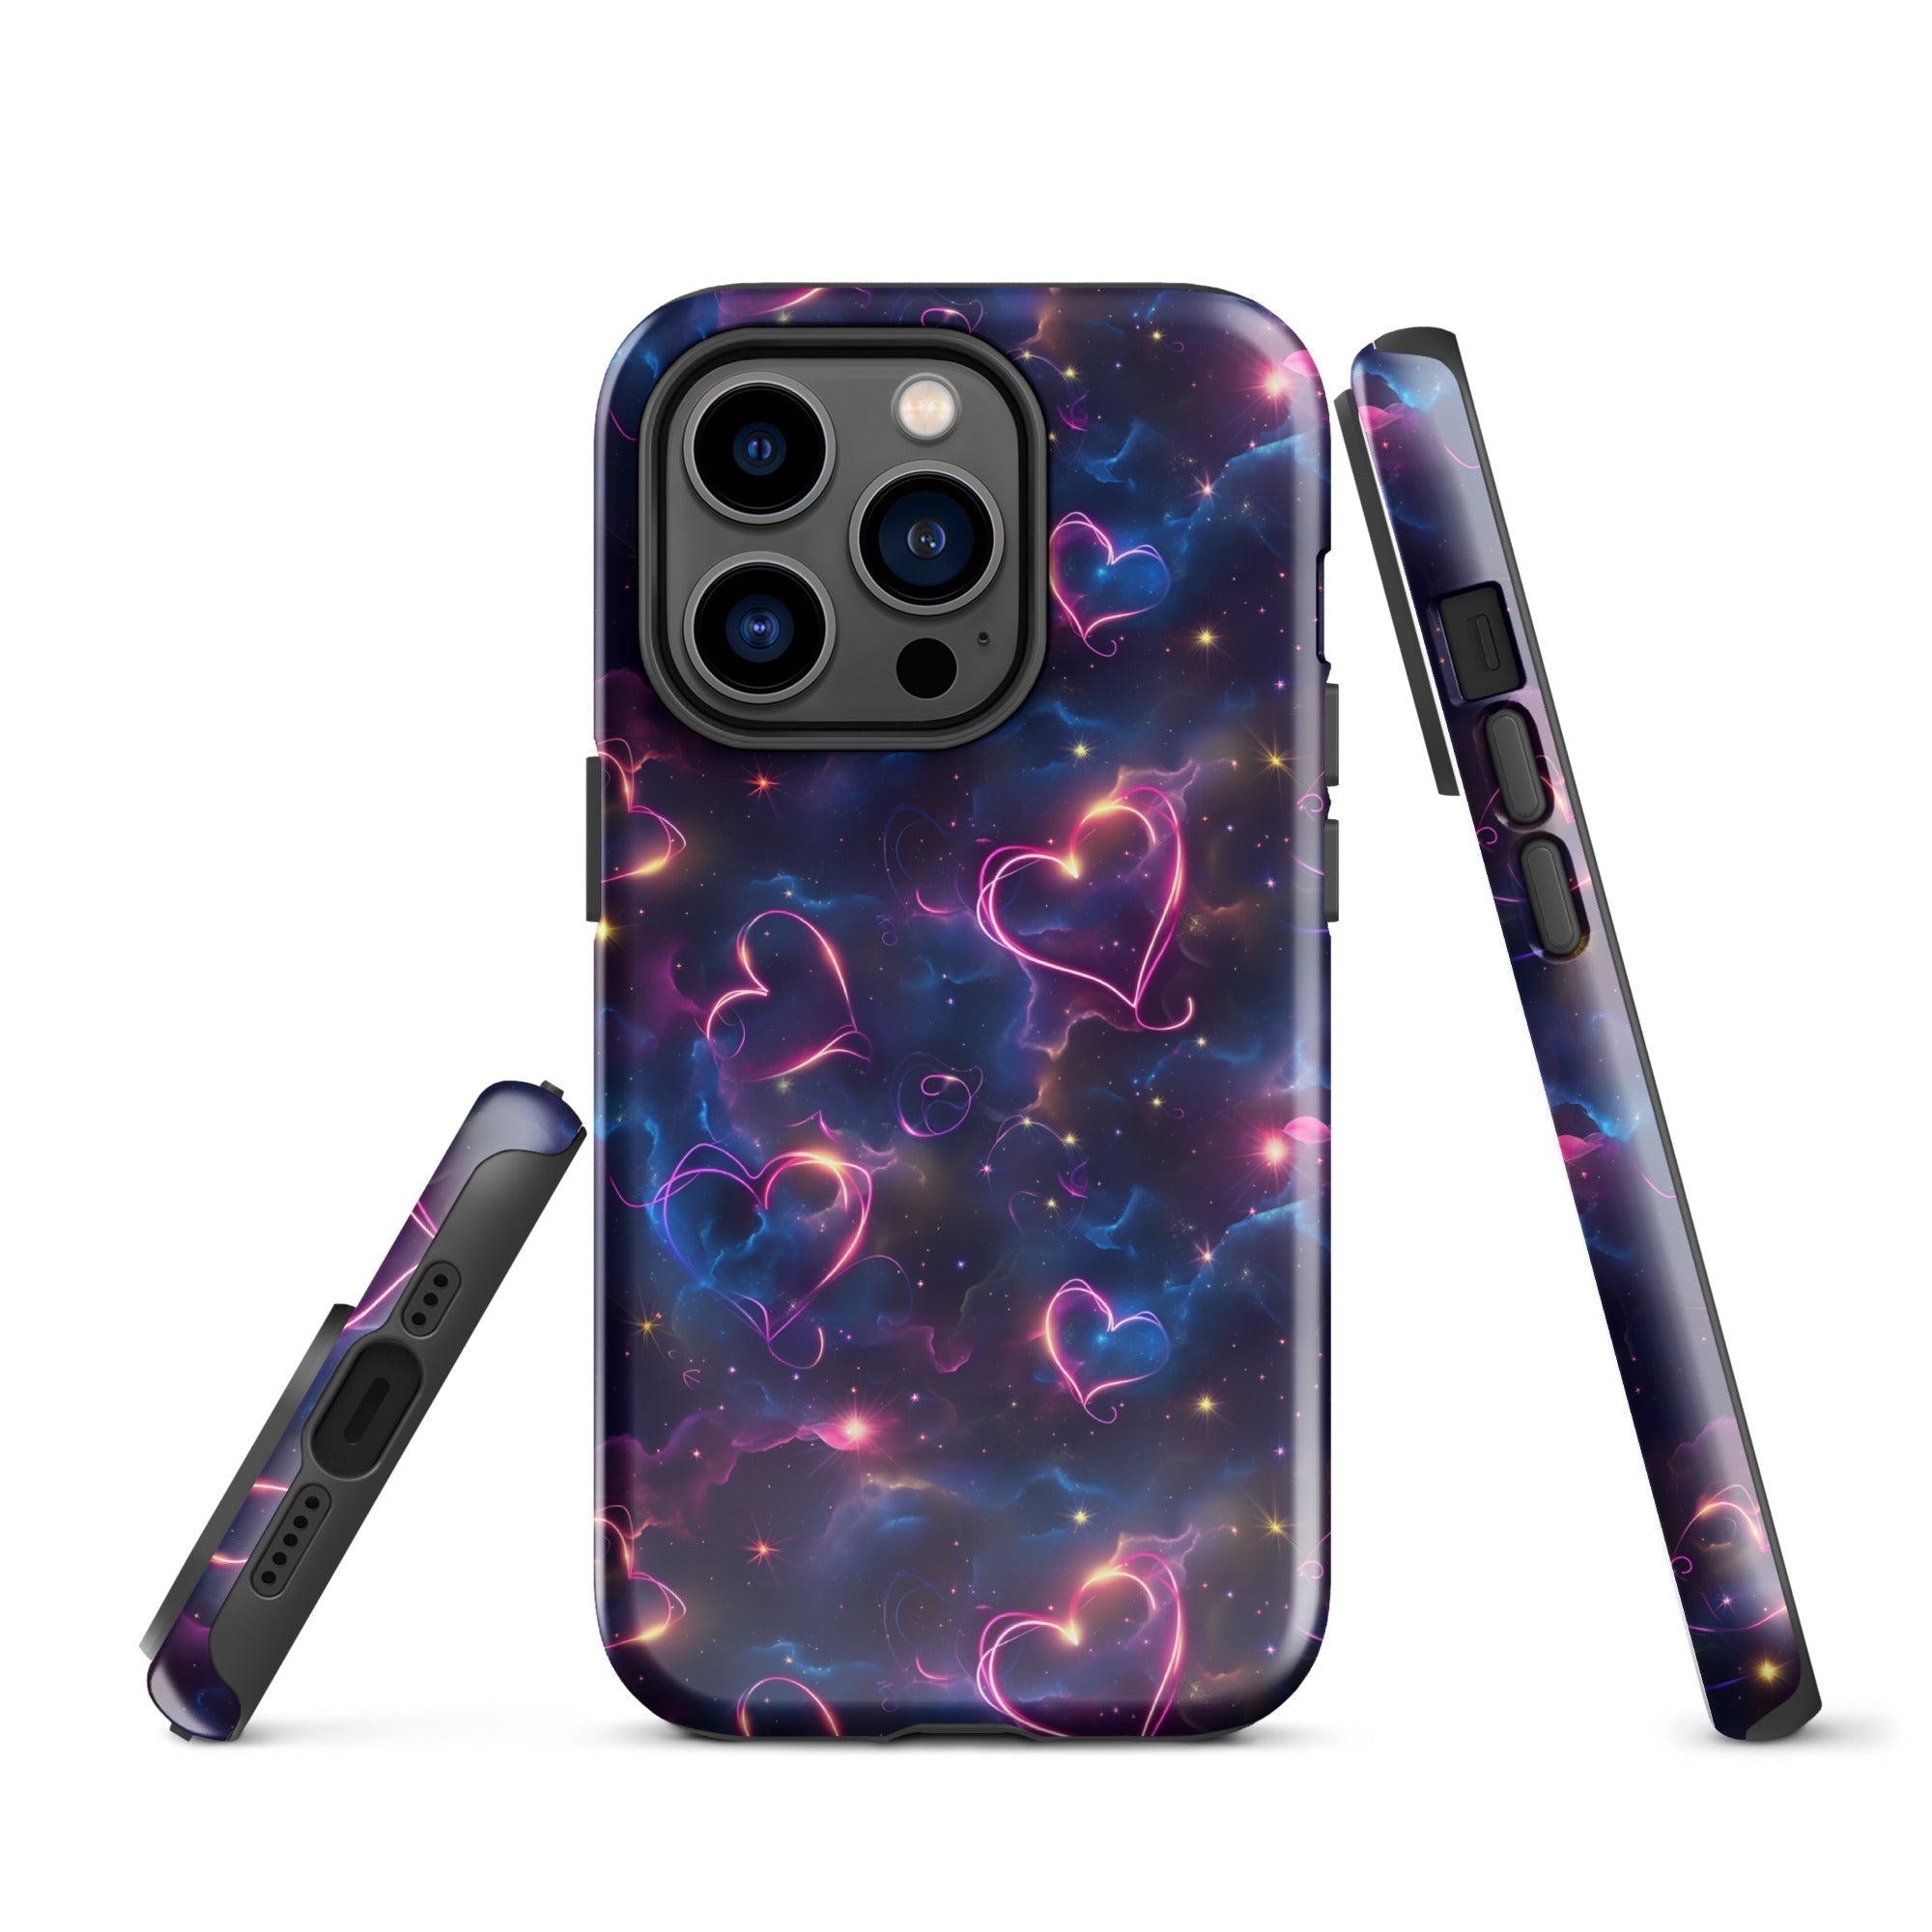 Cosmic Love: Nebula Embrace - iPhone Case - Pattern Symphony